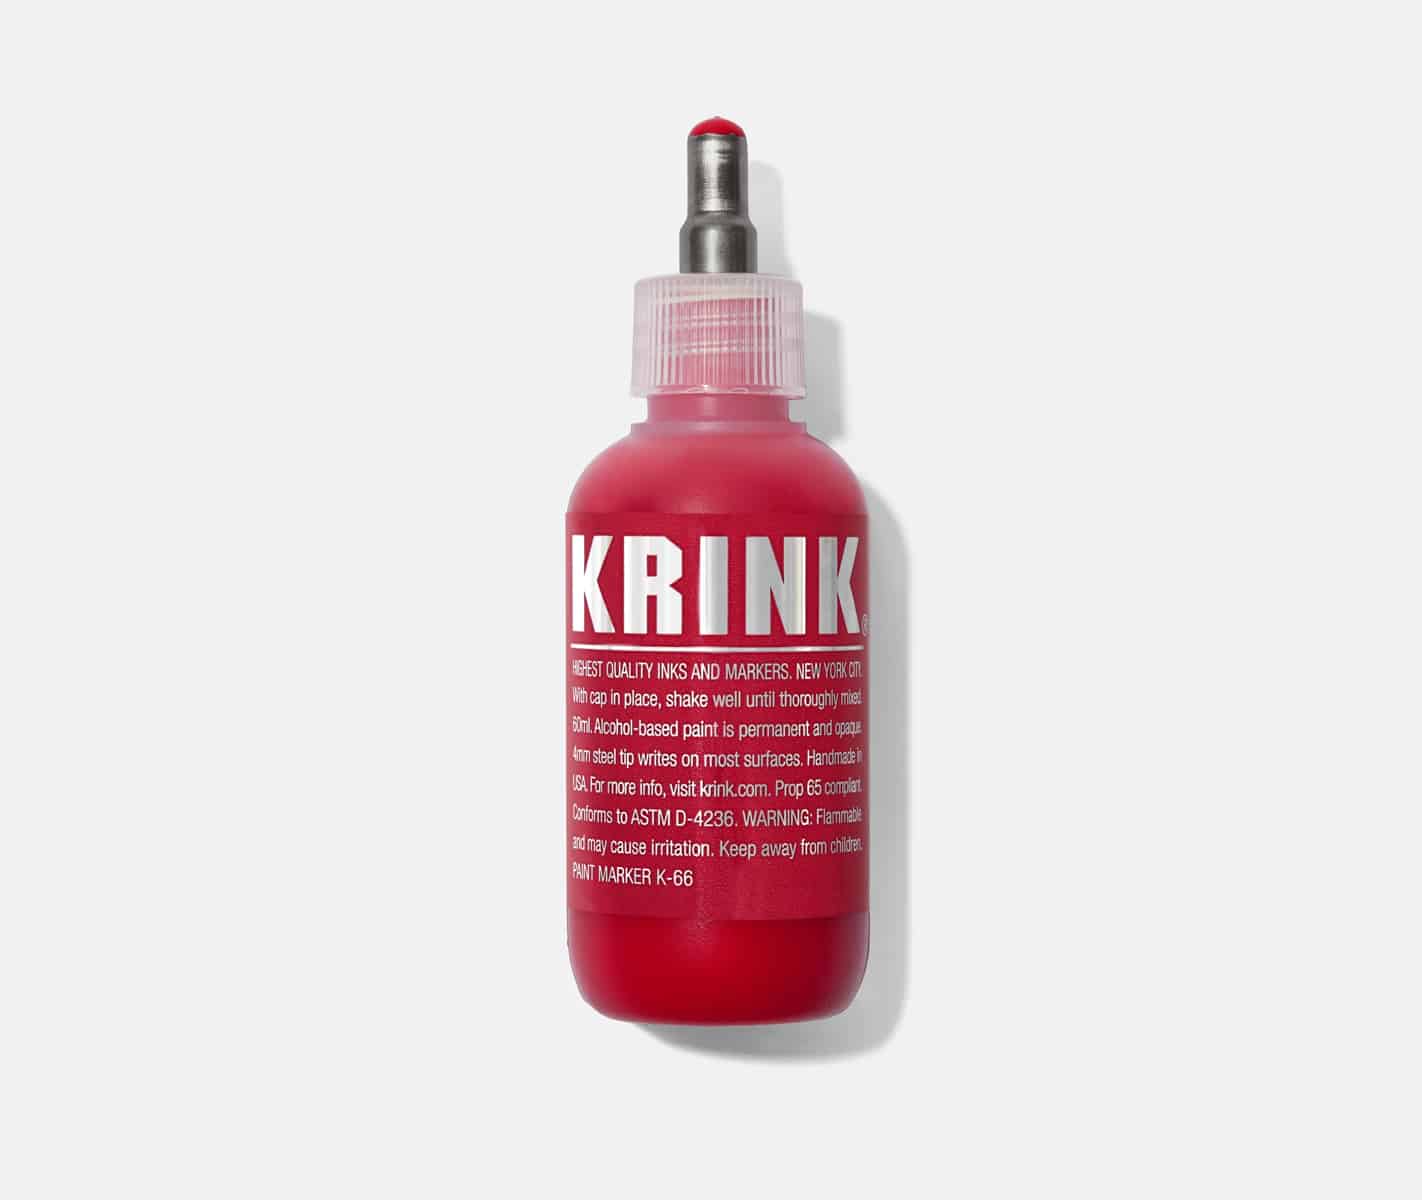 Krink K-60 Paint Marker Silver